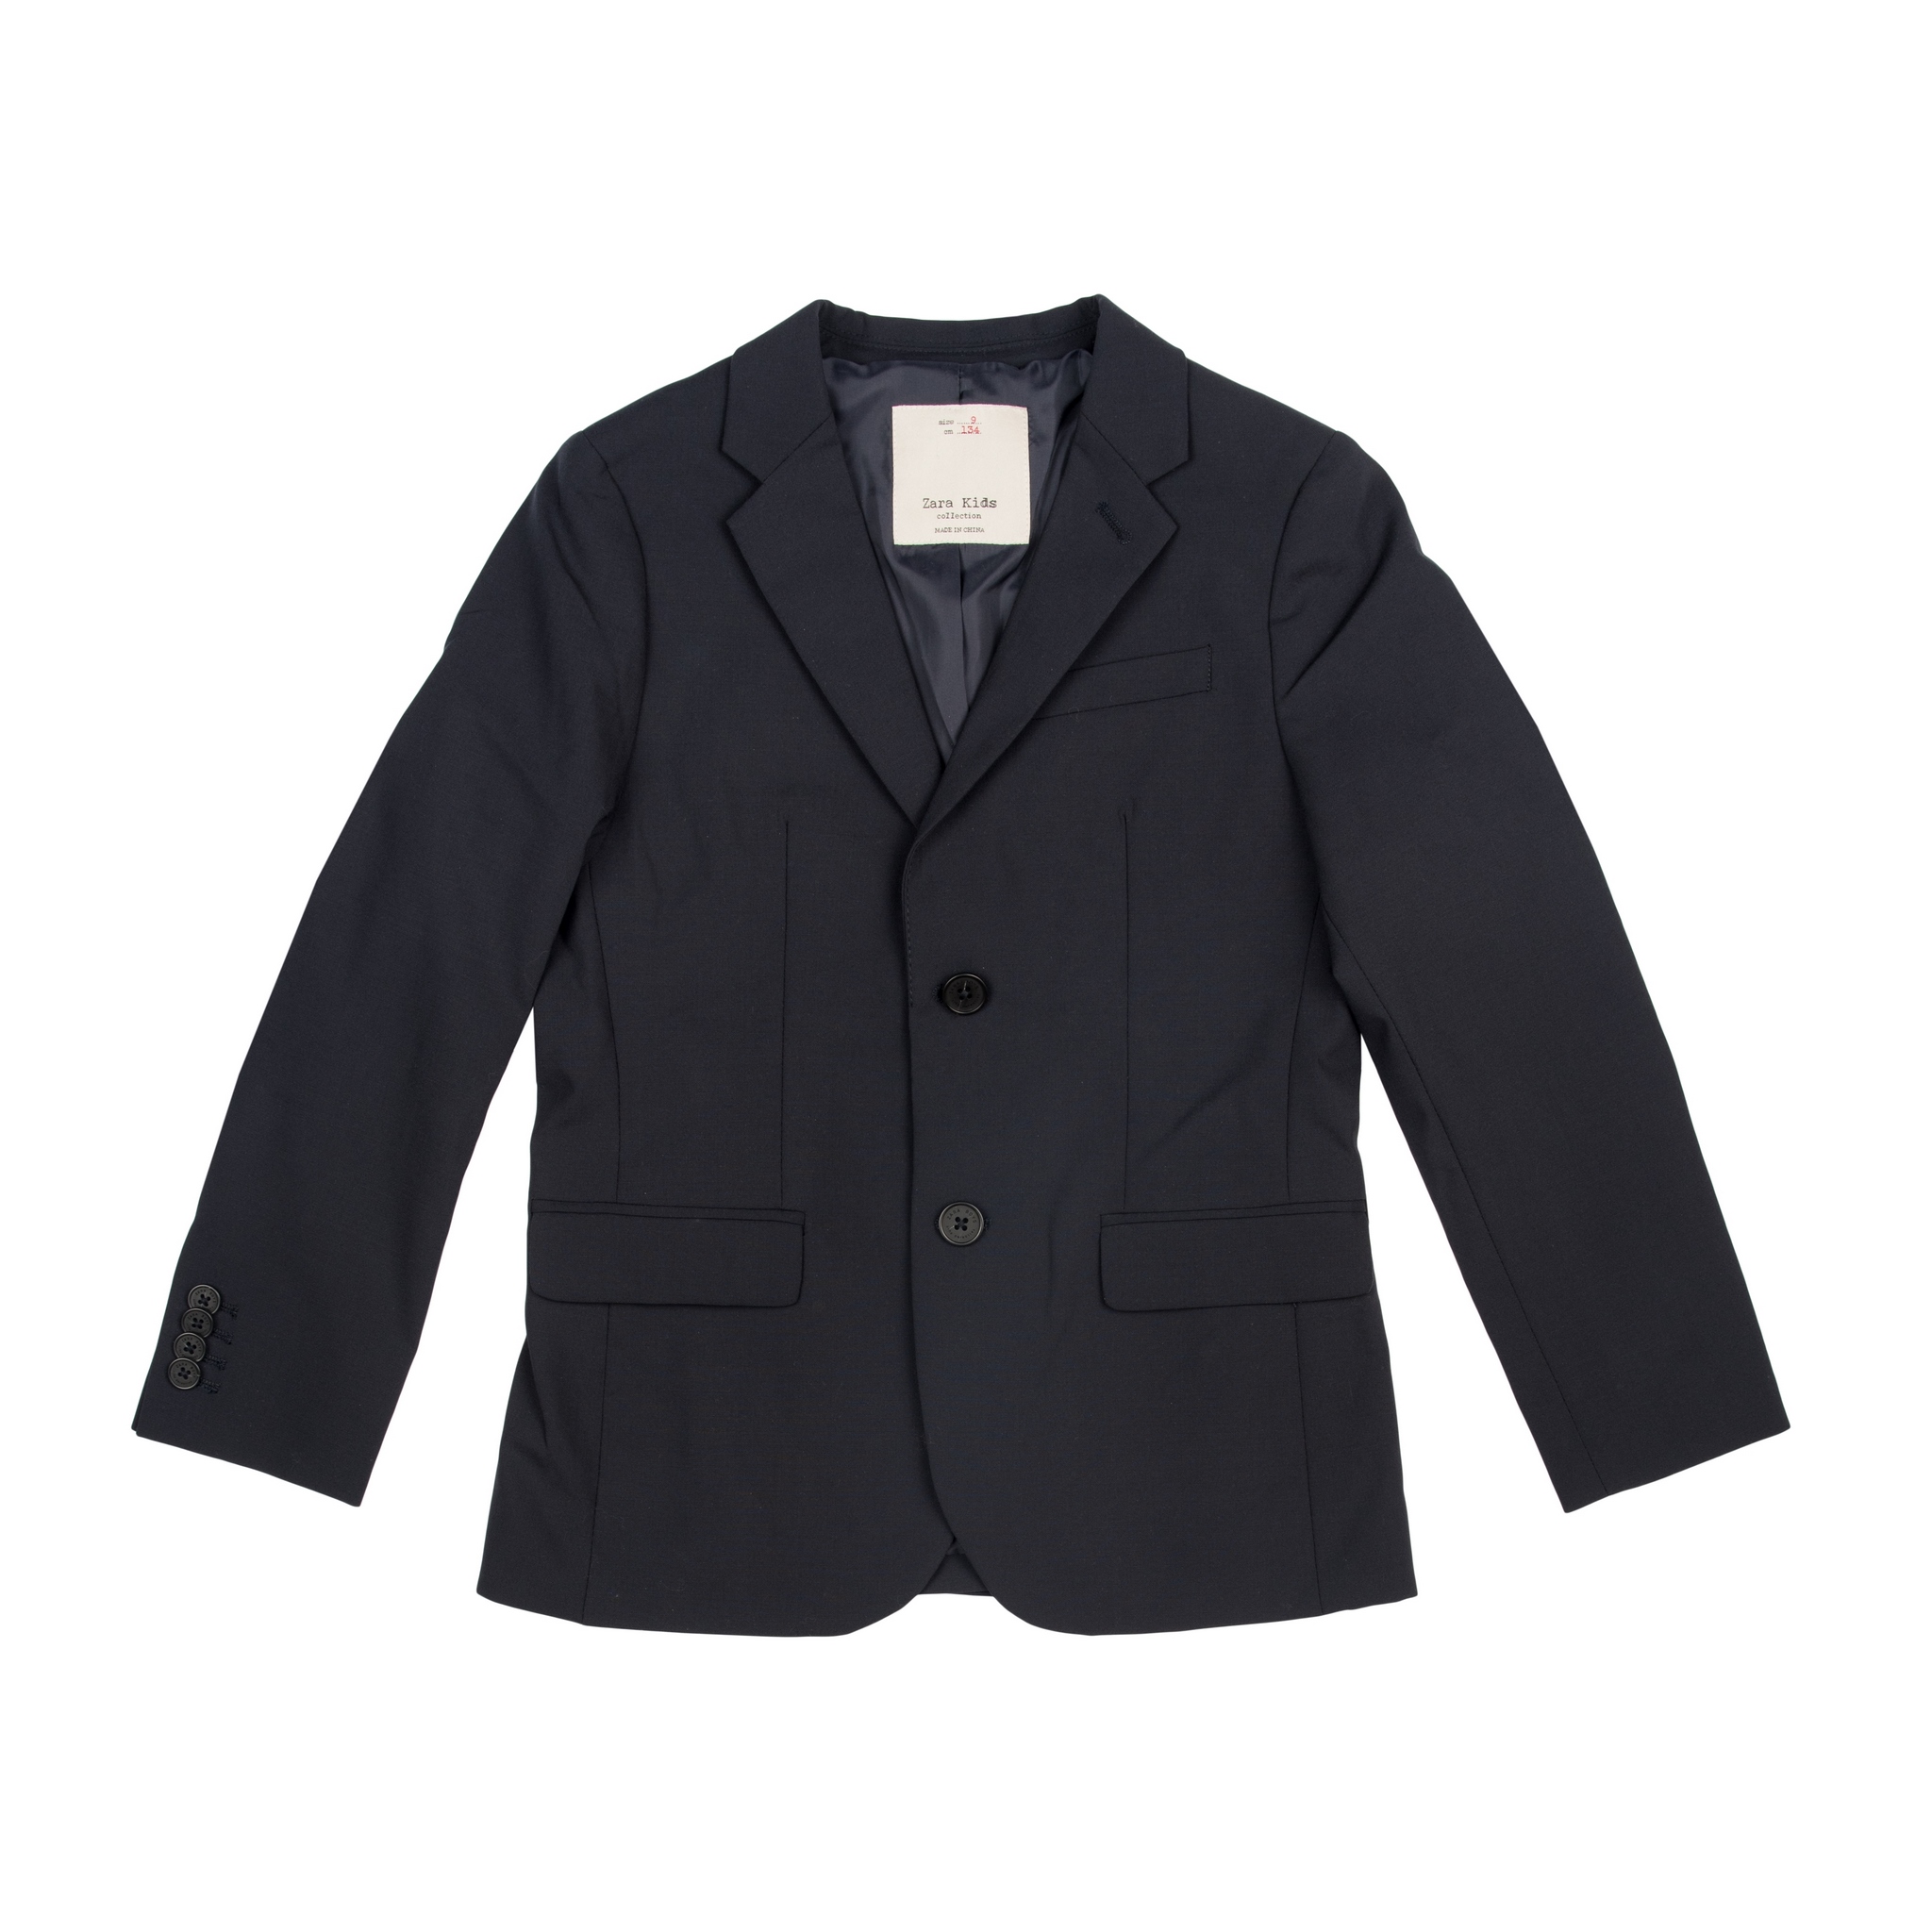 Пиджак для мальчика Zara kids - рейтинг 0,00 по отзывам экспертов ☑Экспертиза состава и производителя